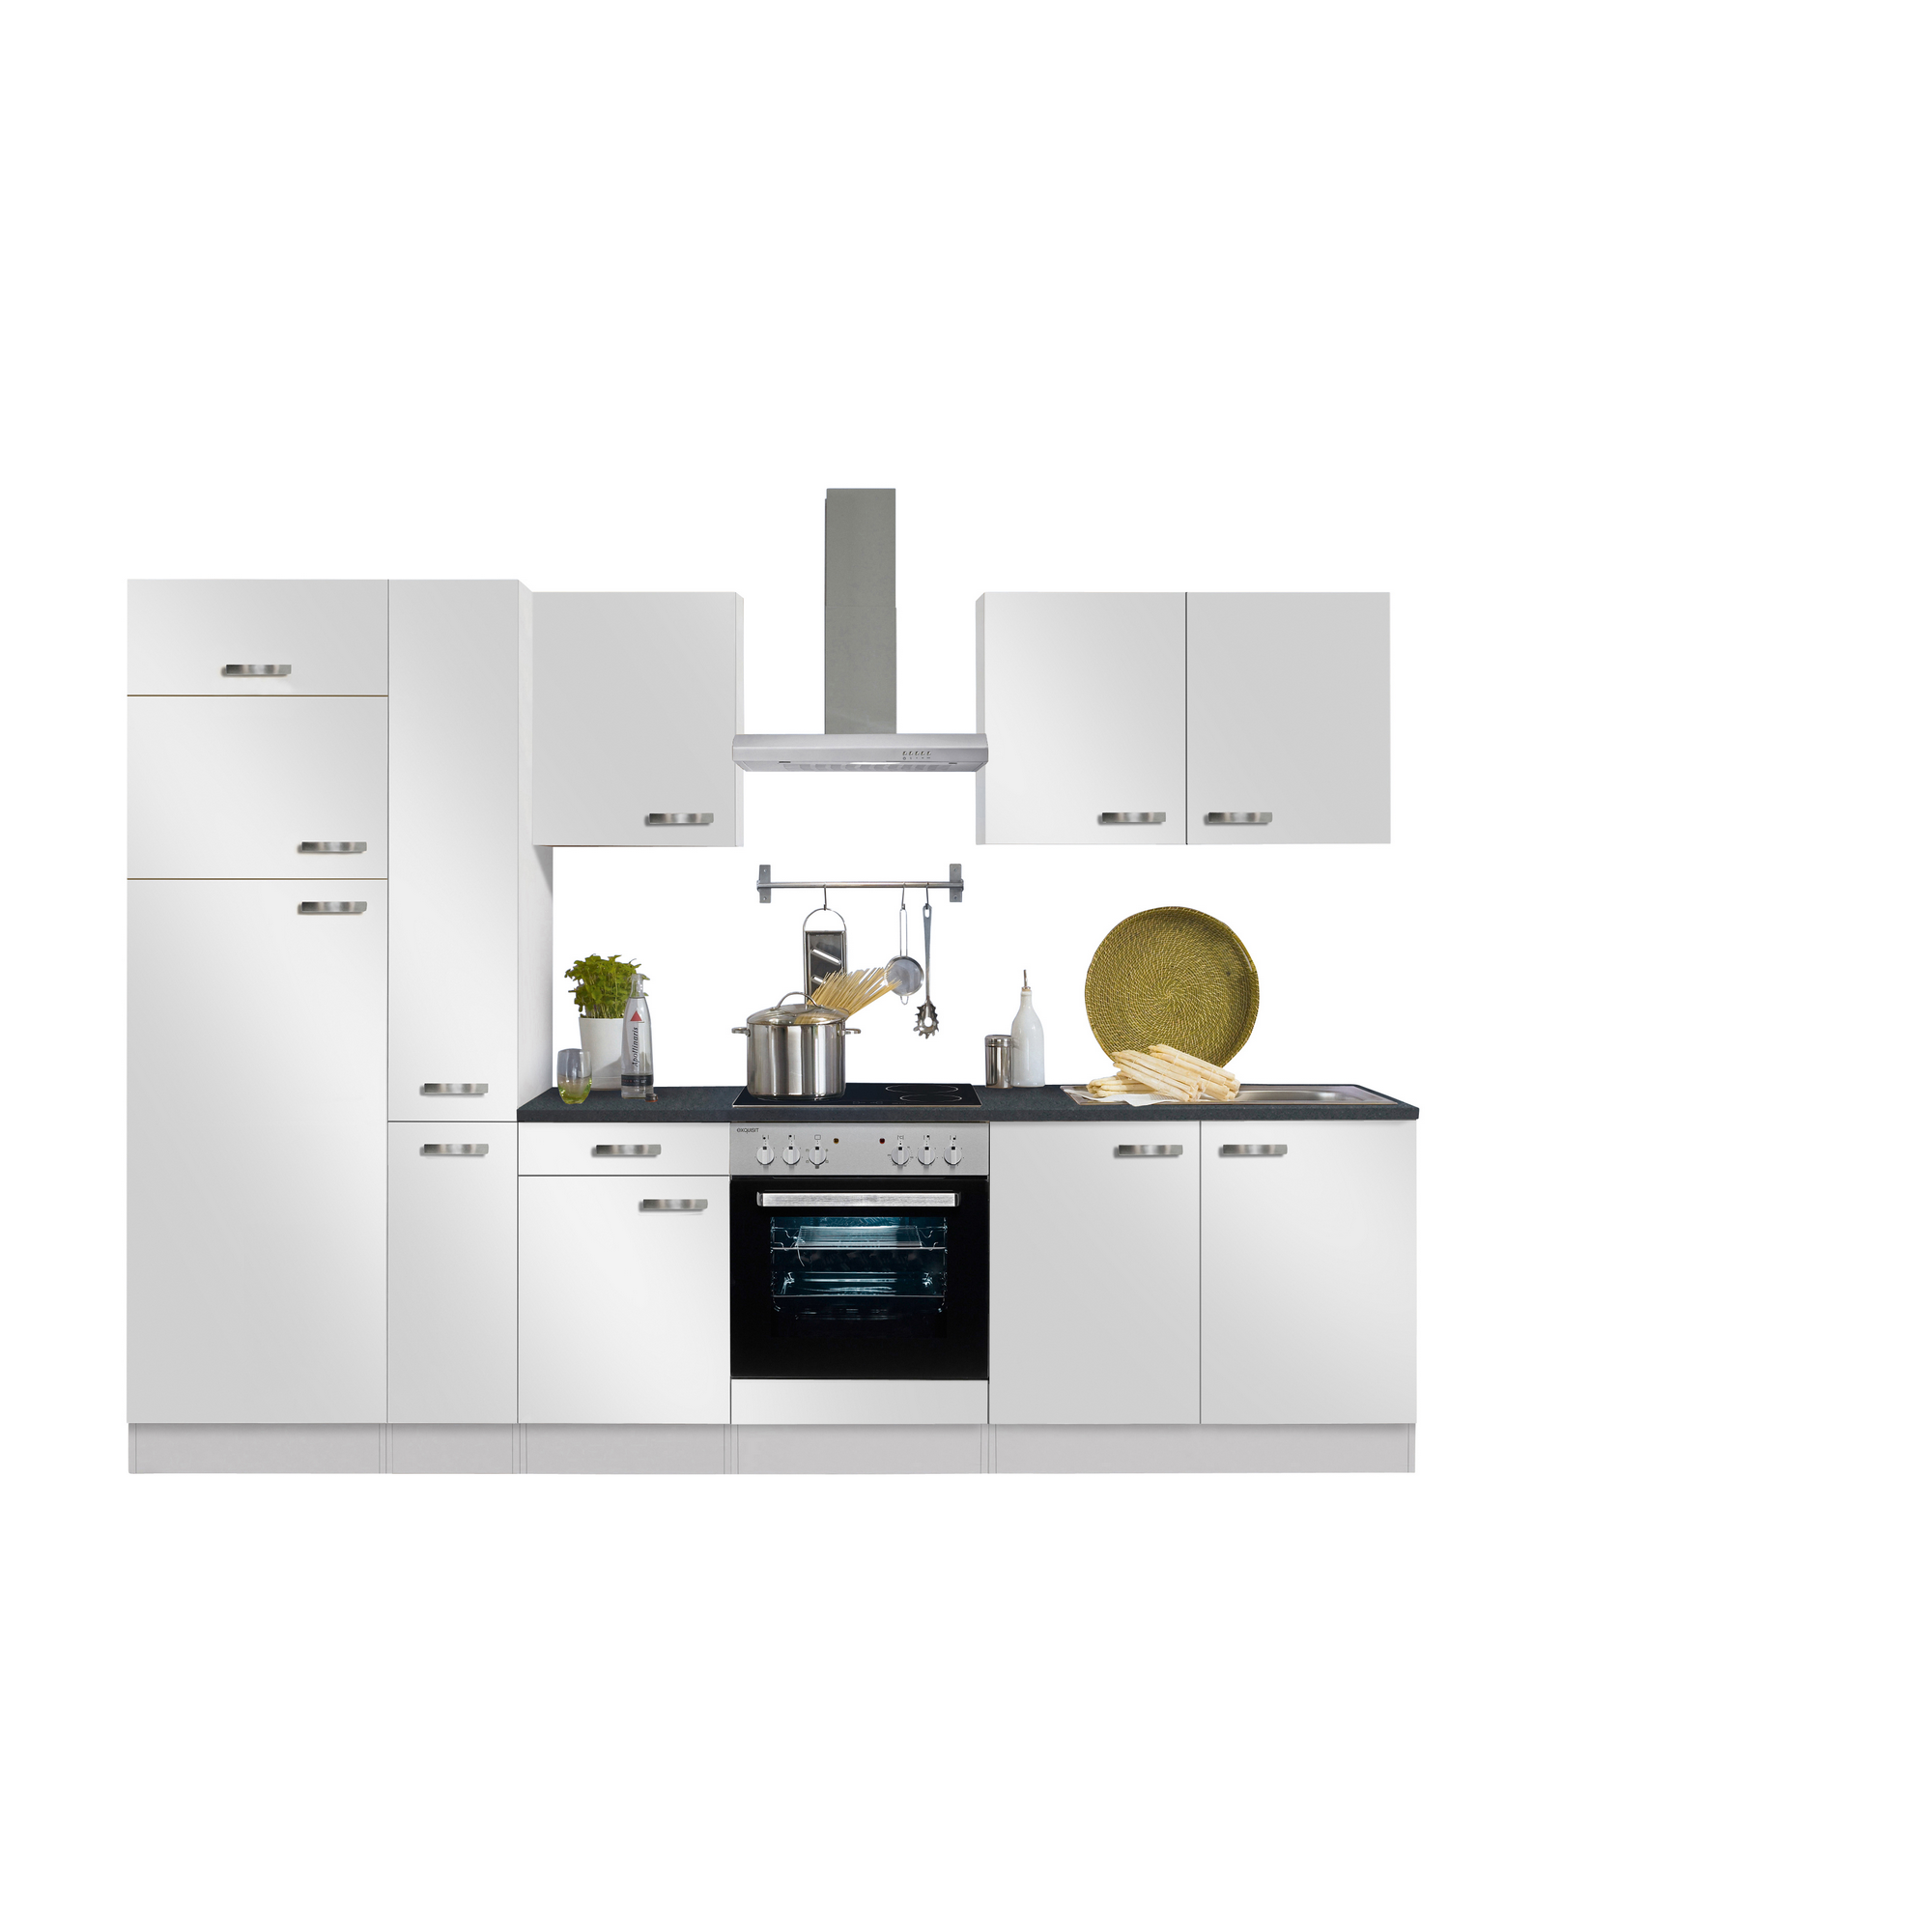 Küchenzeile mit E-Geräten 'OPTIkompakt Lagos' weiß/anthrazit 300 cm + product picture